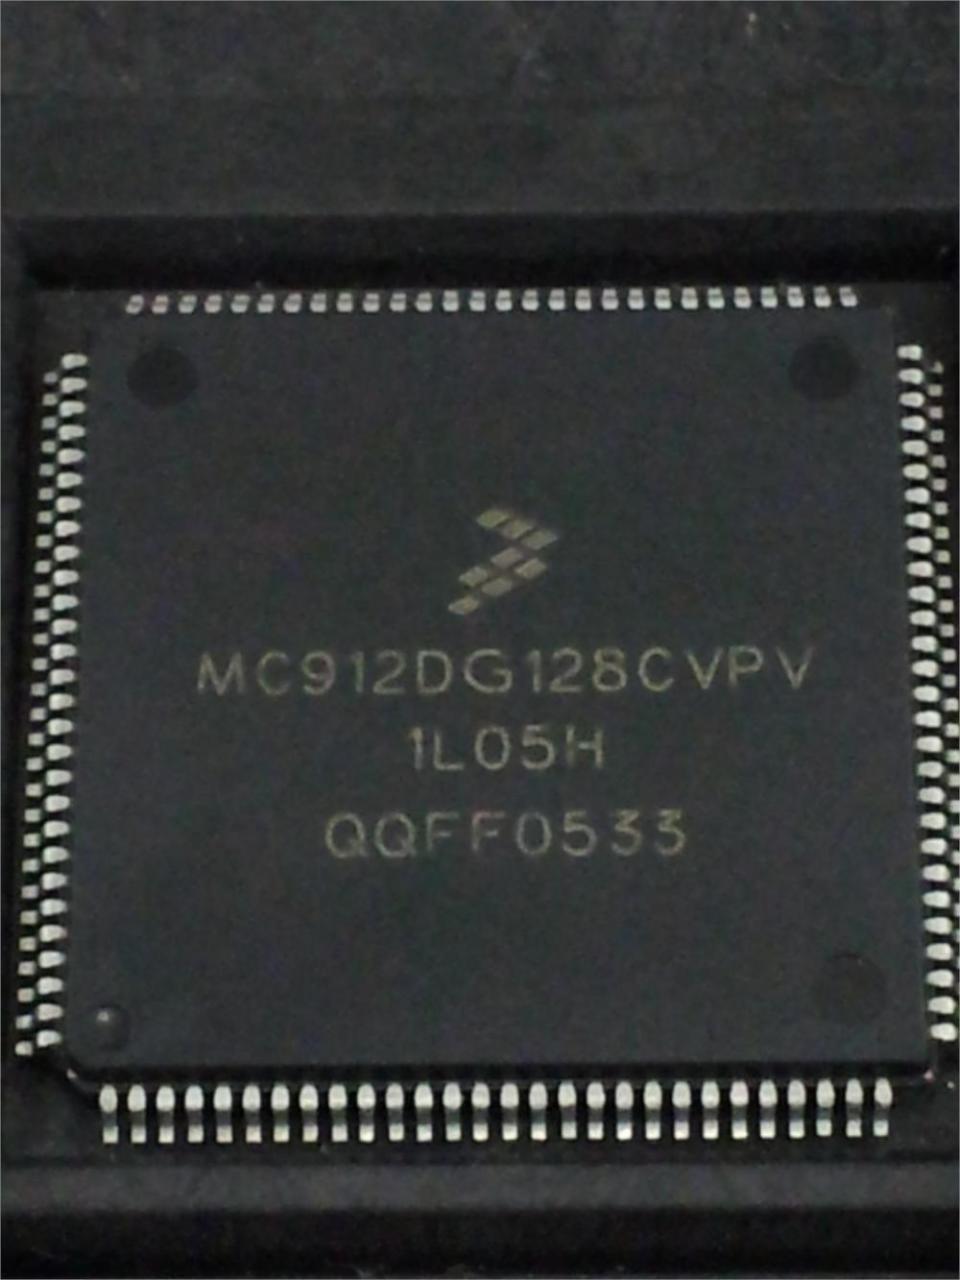 MC912DG128CVPV